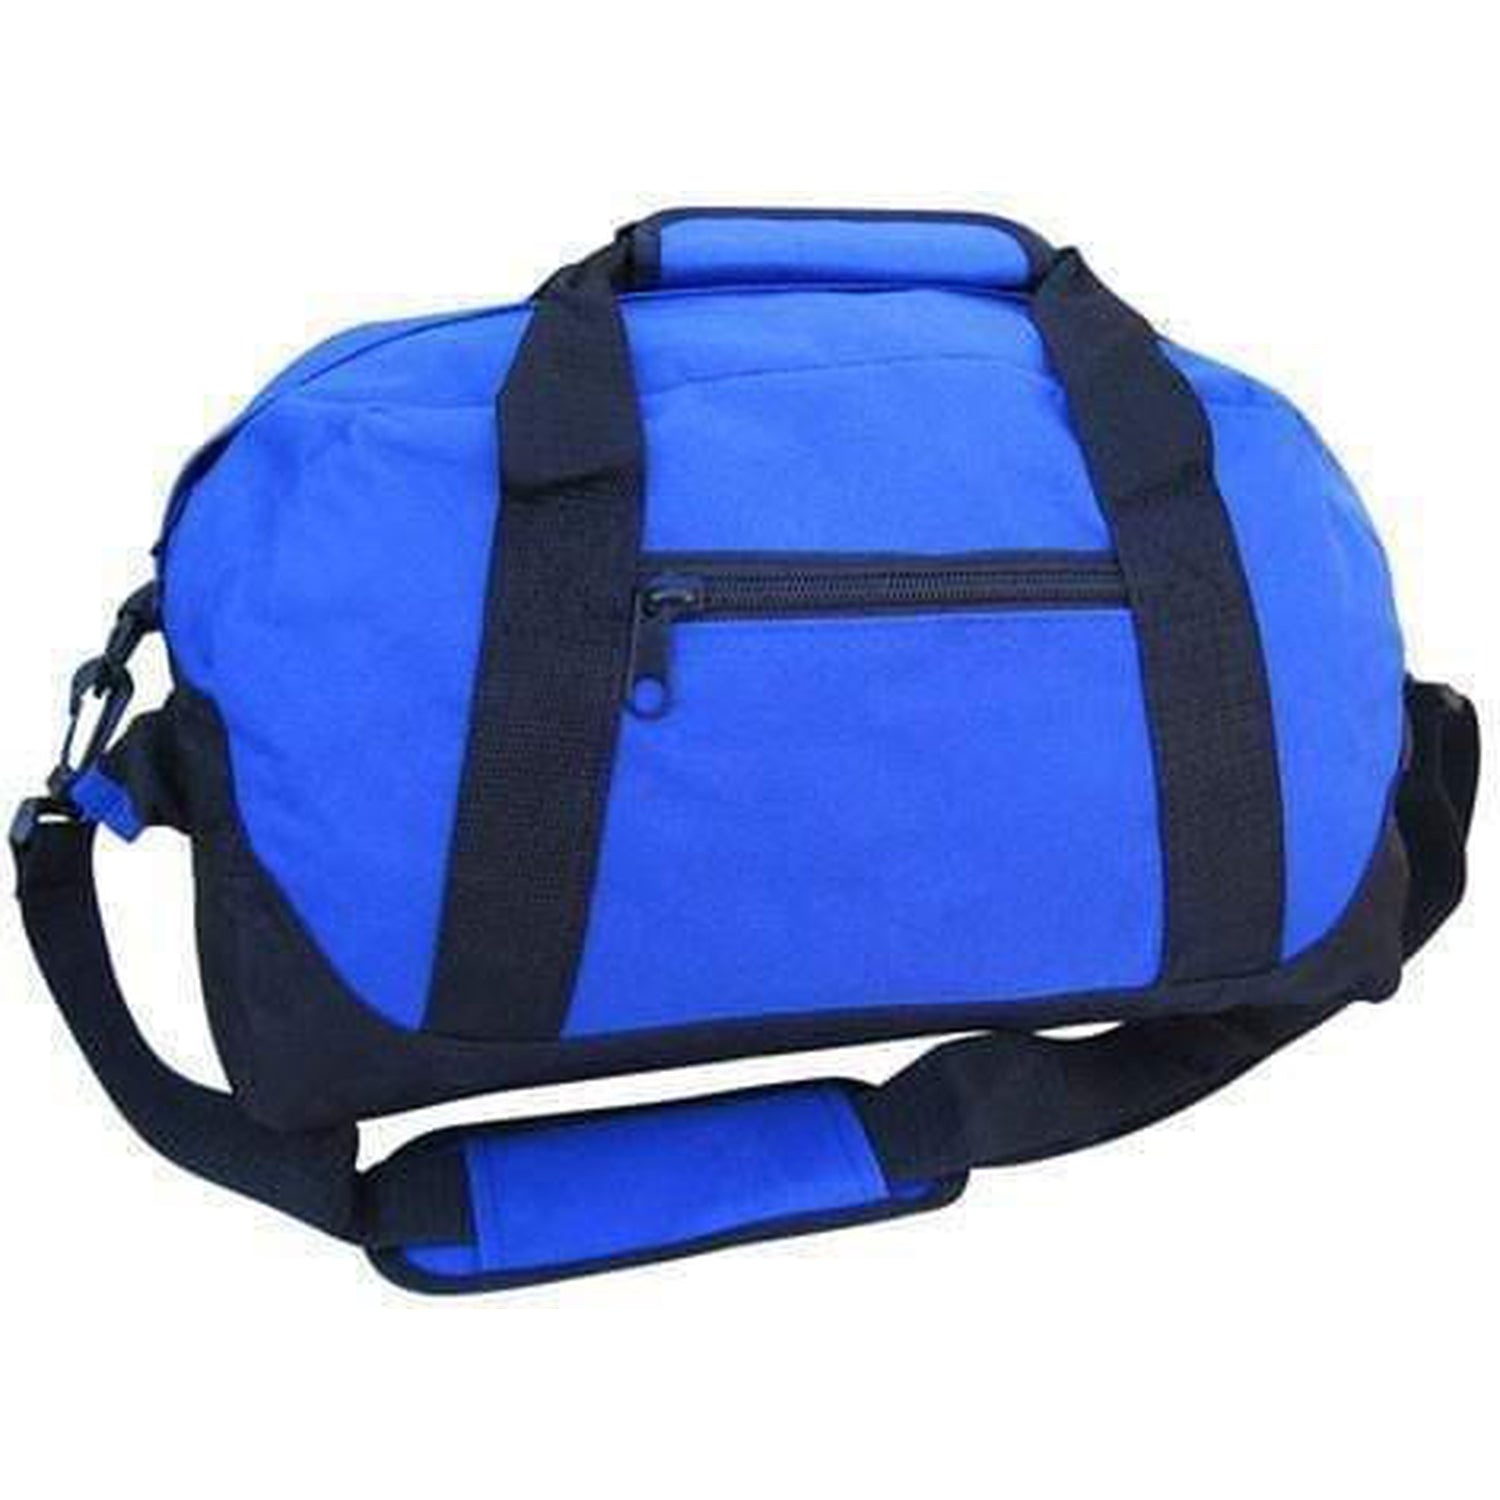 Wholesale Small Duffle Bags, Duffle Bags in Bulk, Custom Duffle Bags – BagzDepot™